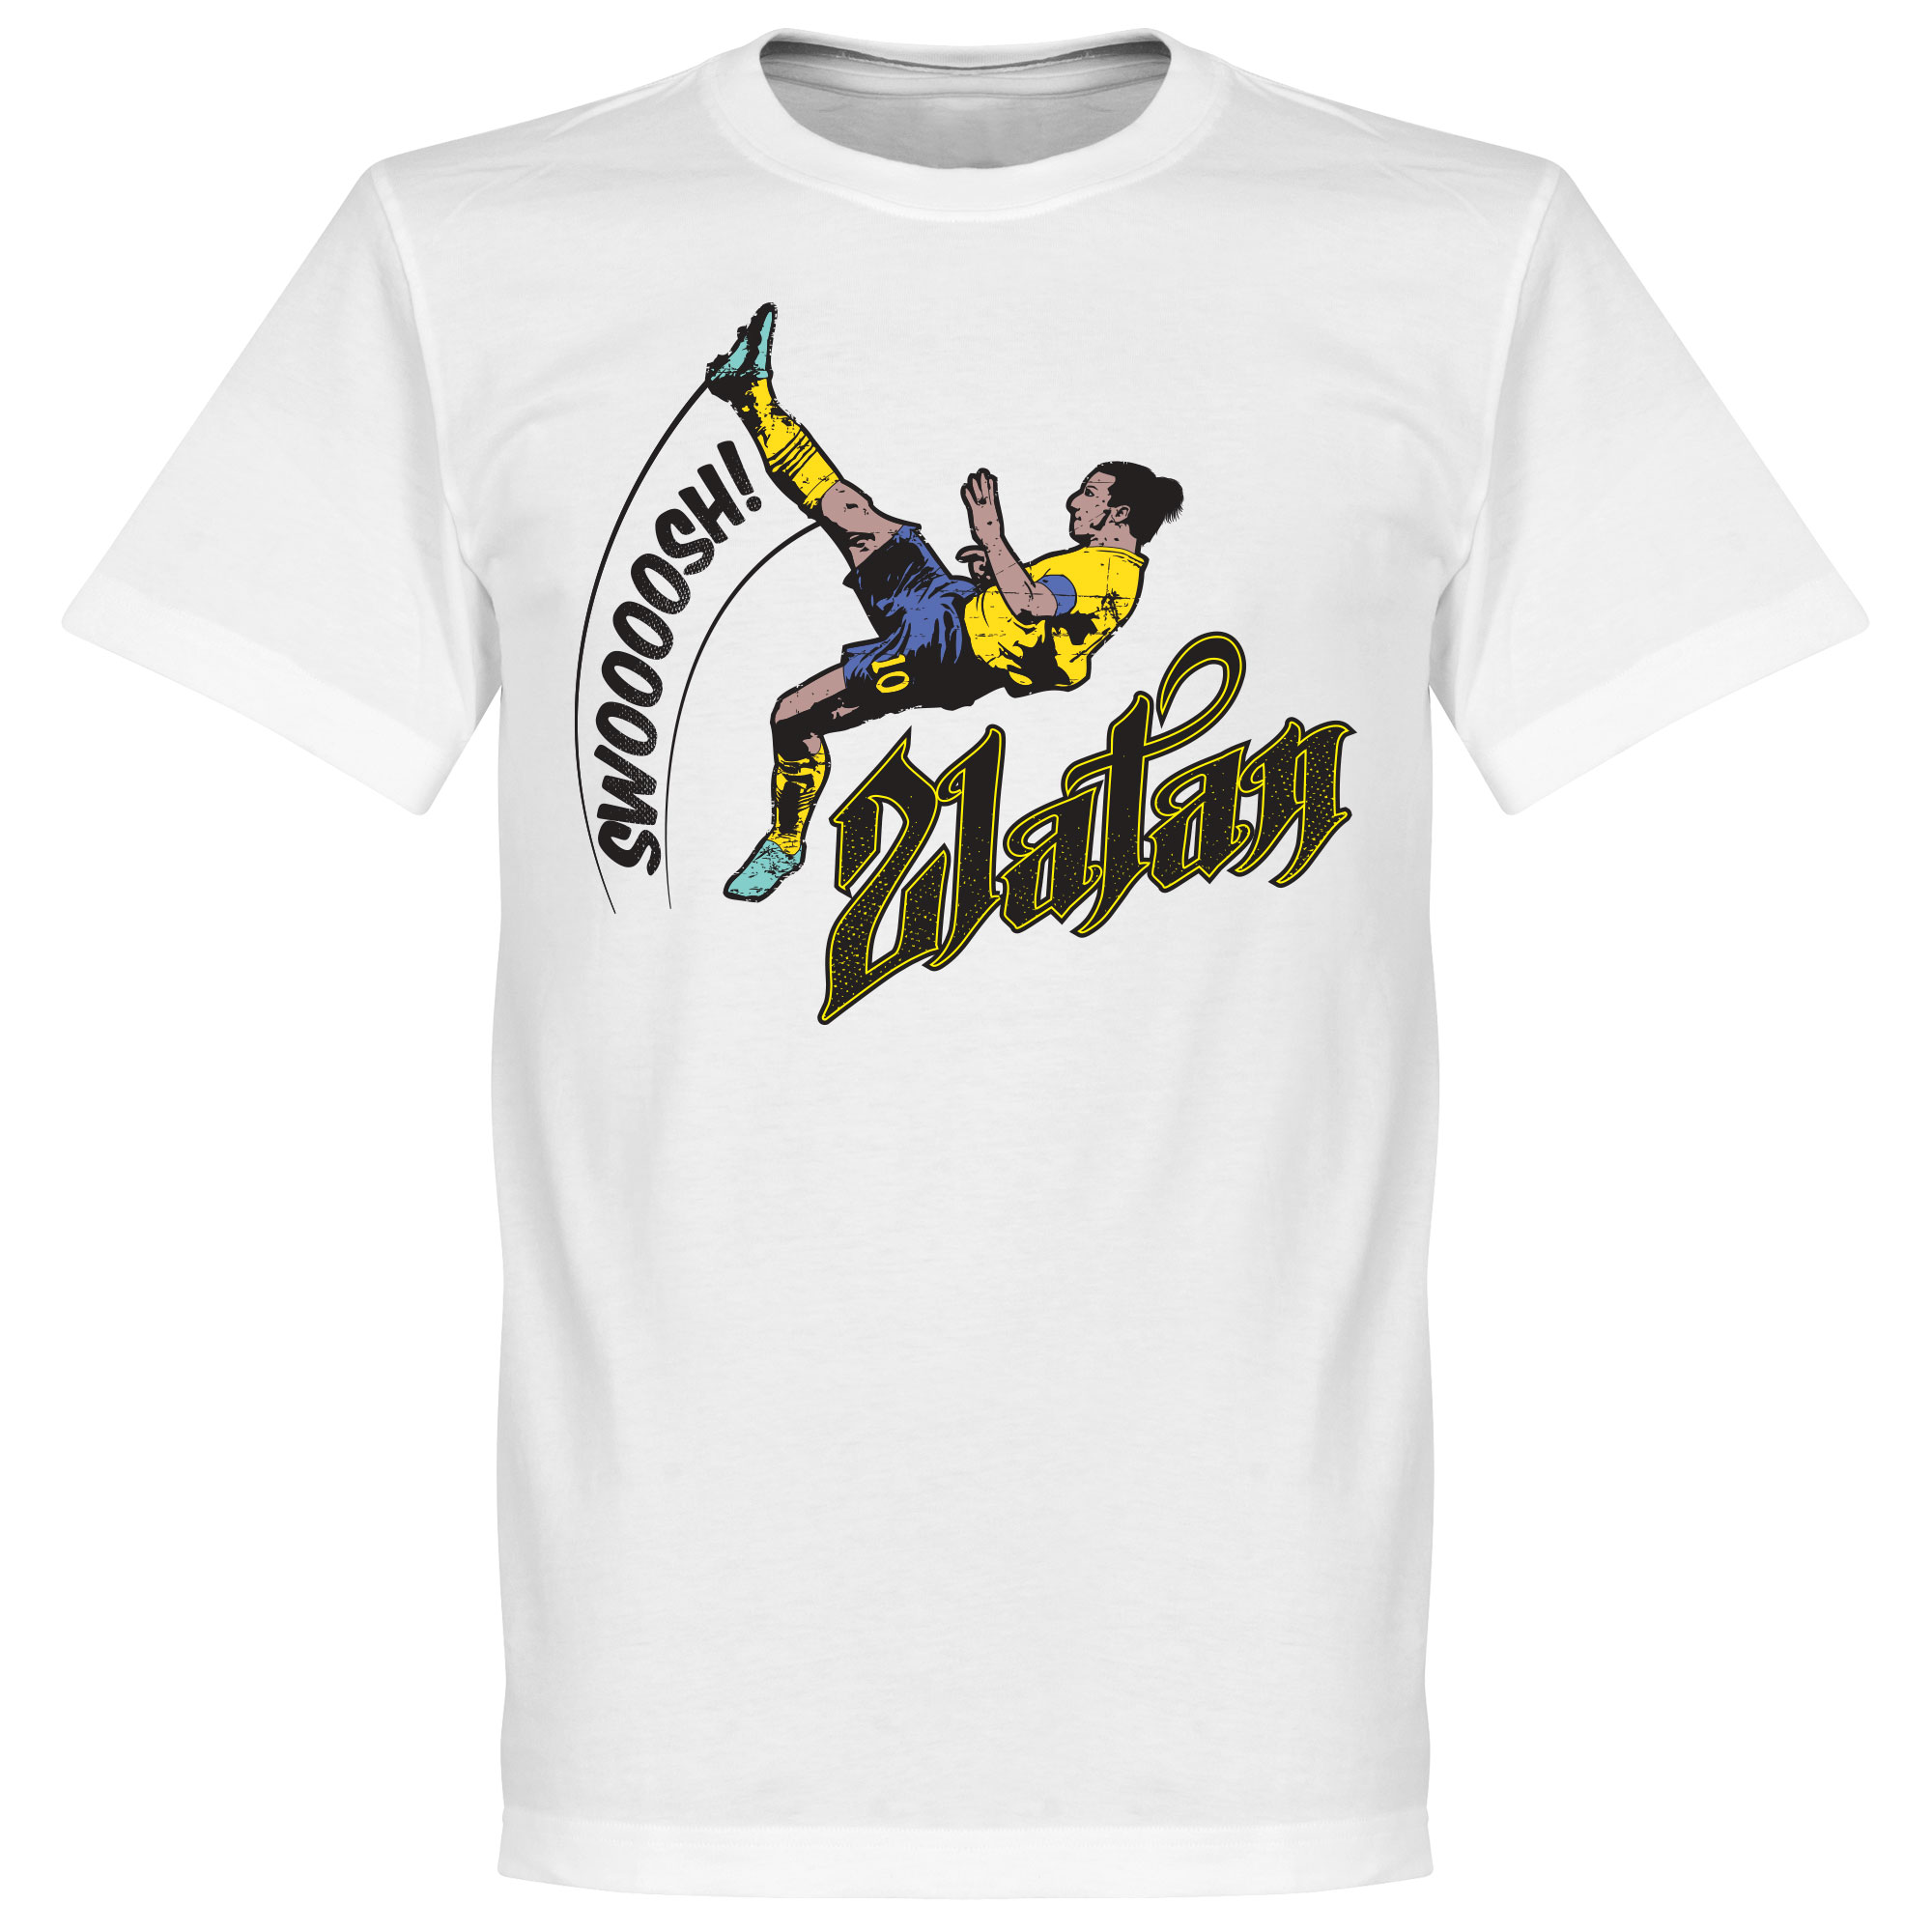 Zlatan Ibrahimovic Bicycle Kick T-shirt S